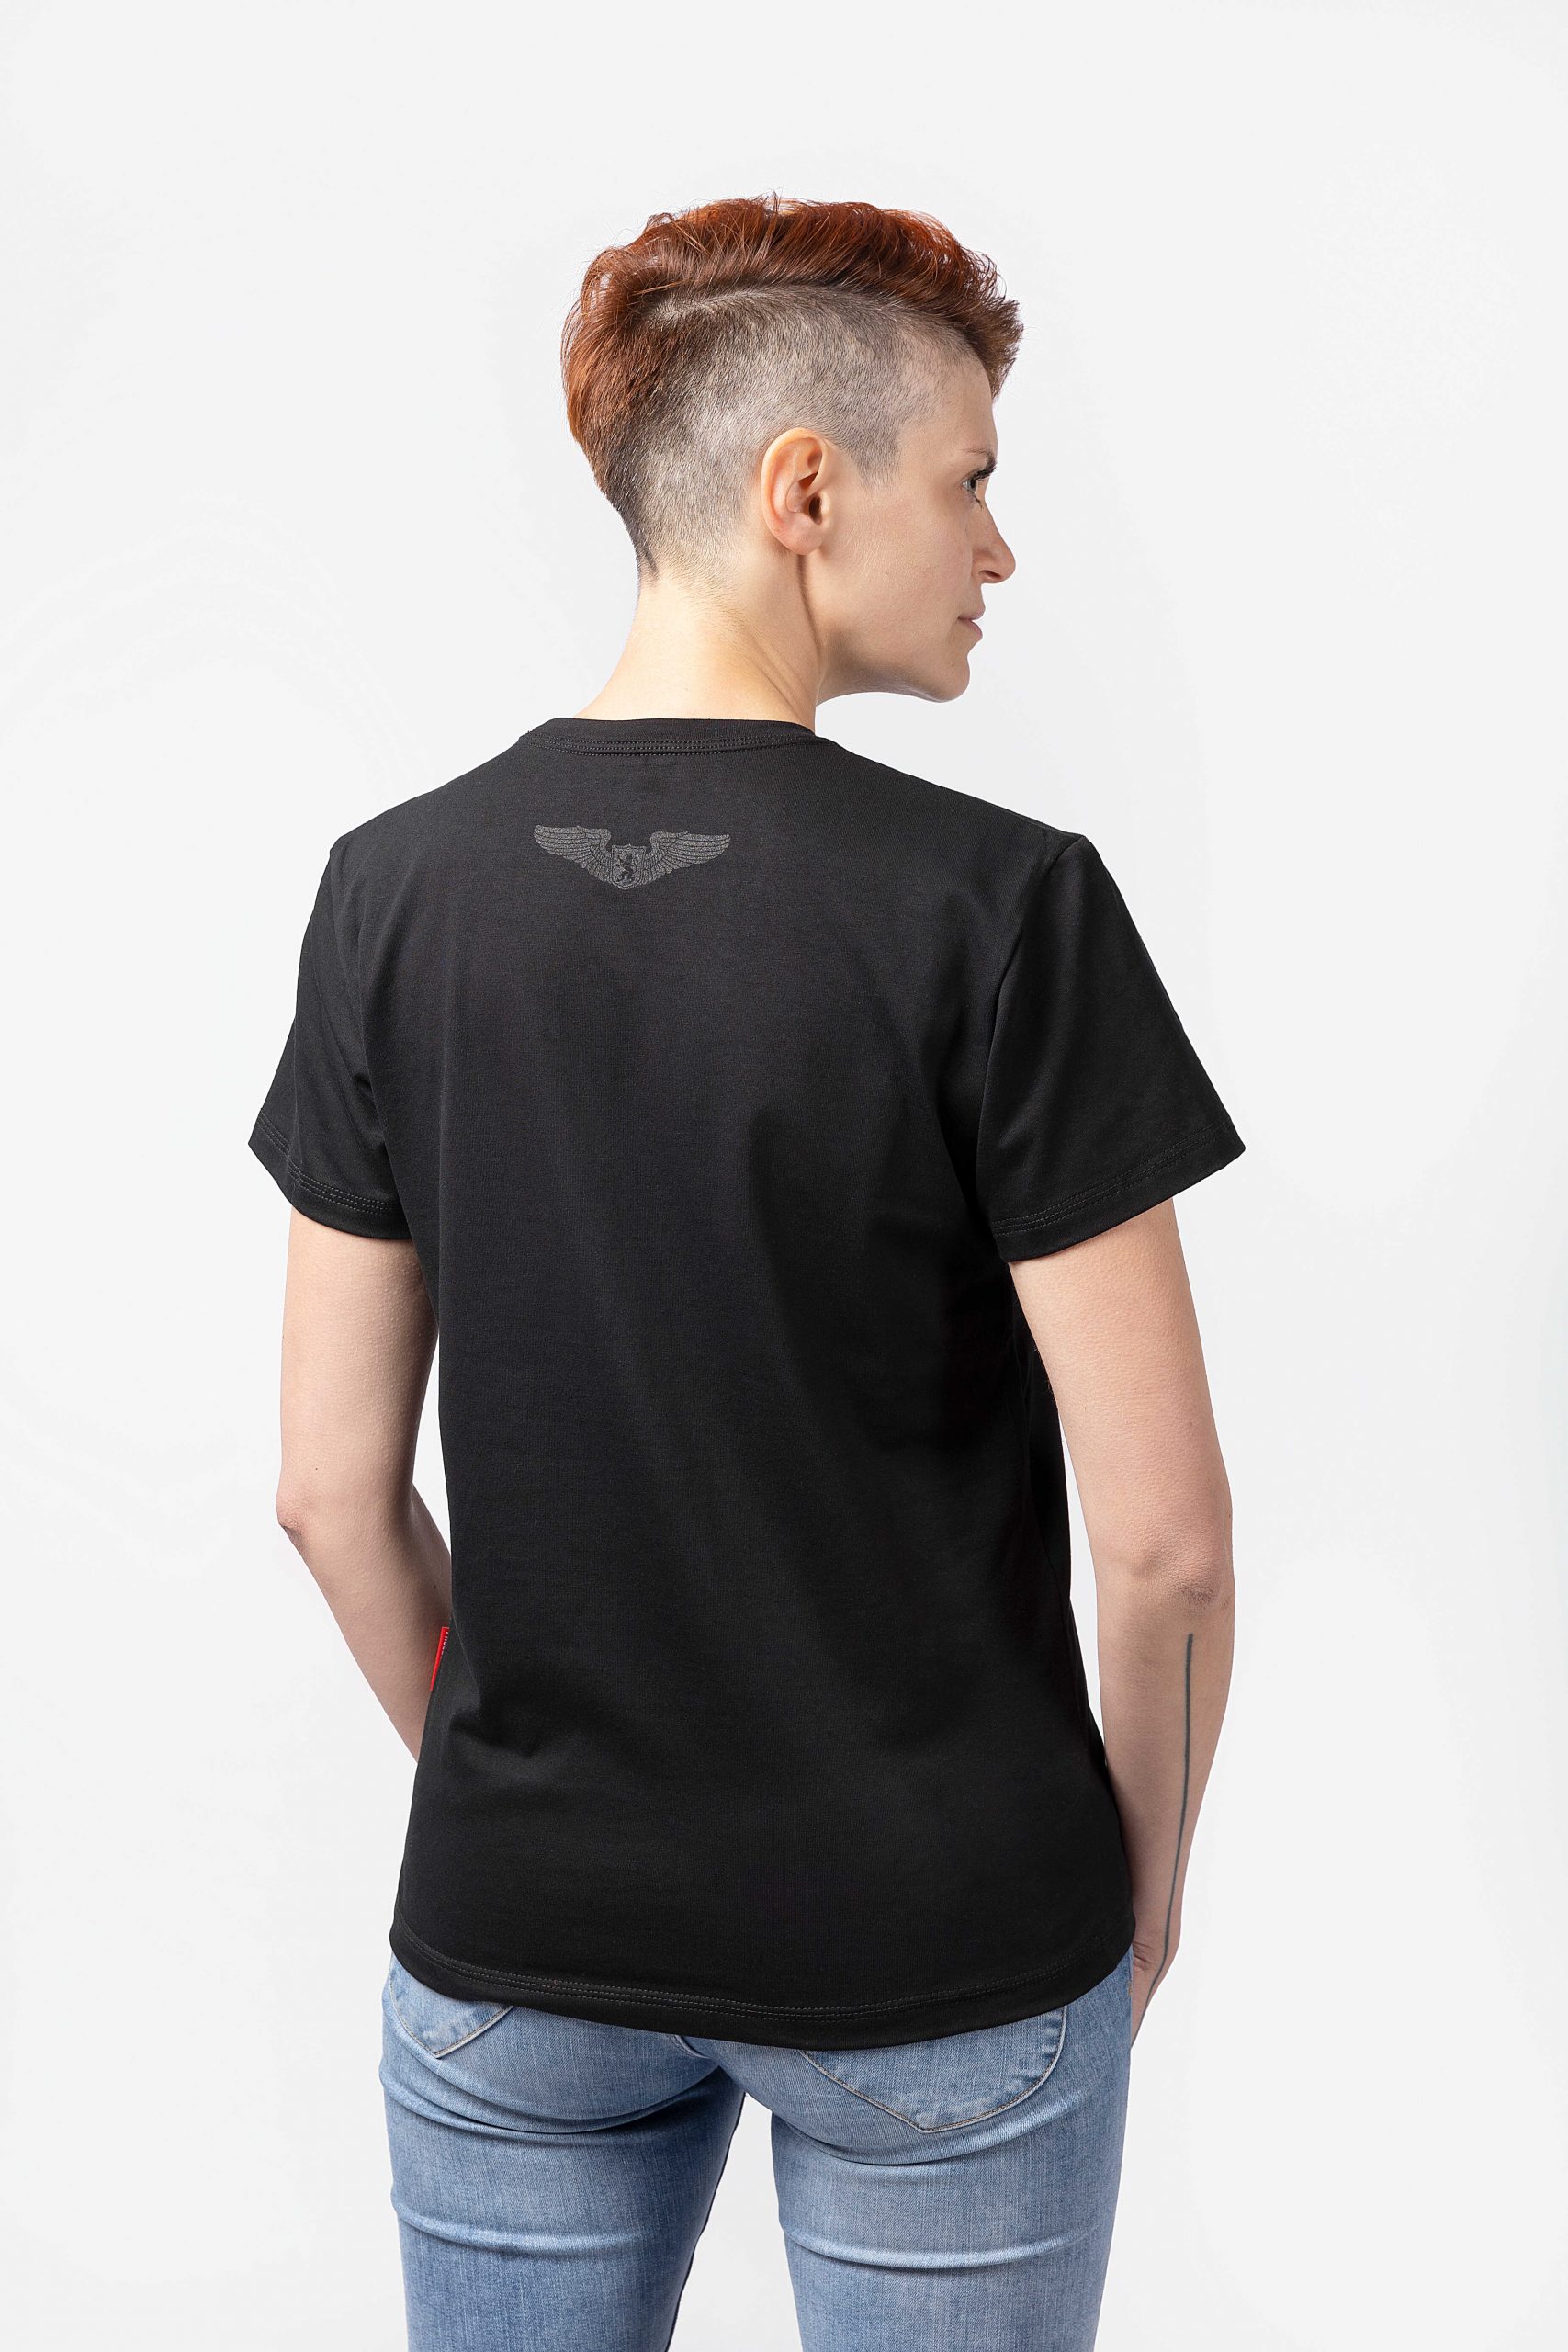 Women's T-Shirt Flu. Color black.  Material: 95% cotton, 5% spandex.